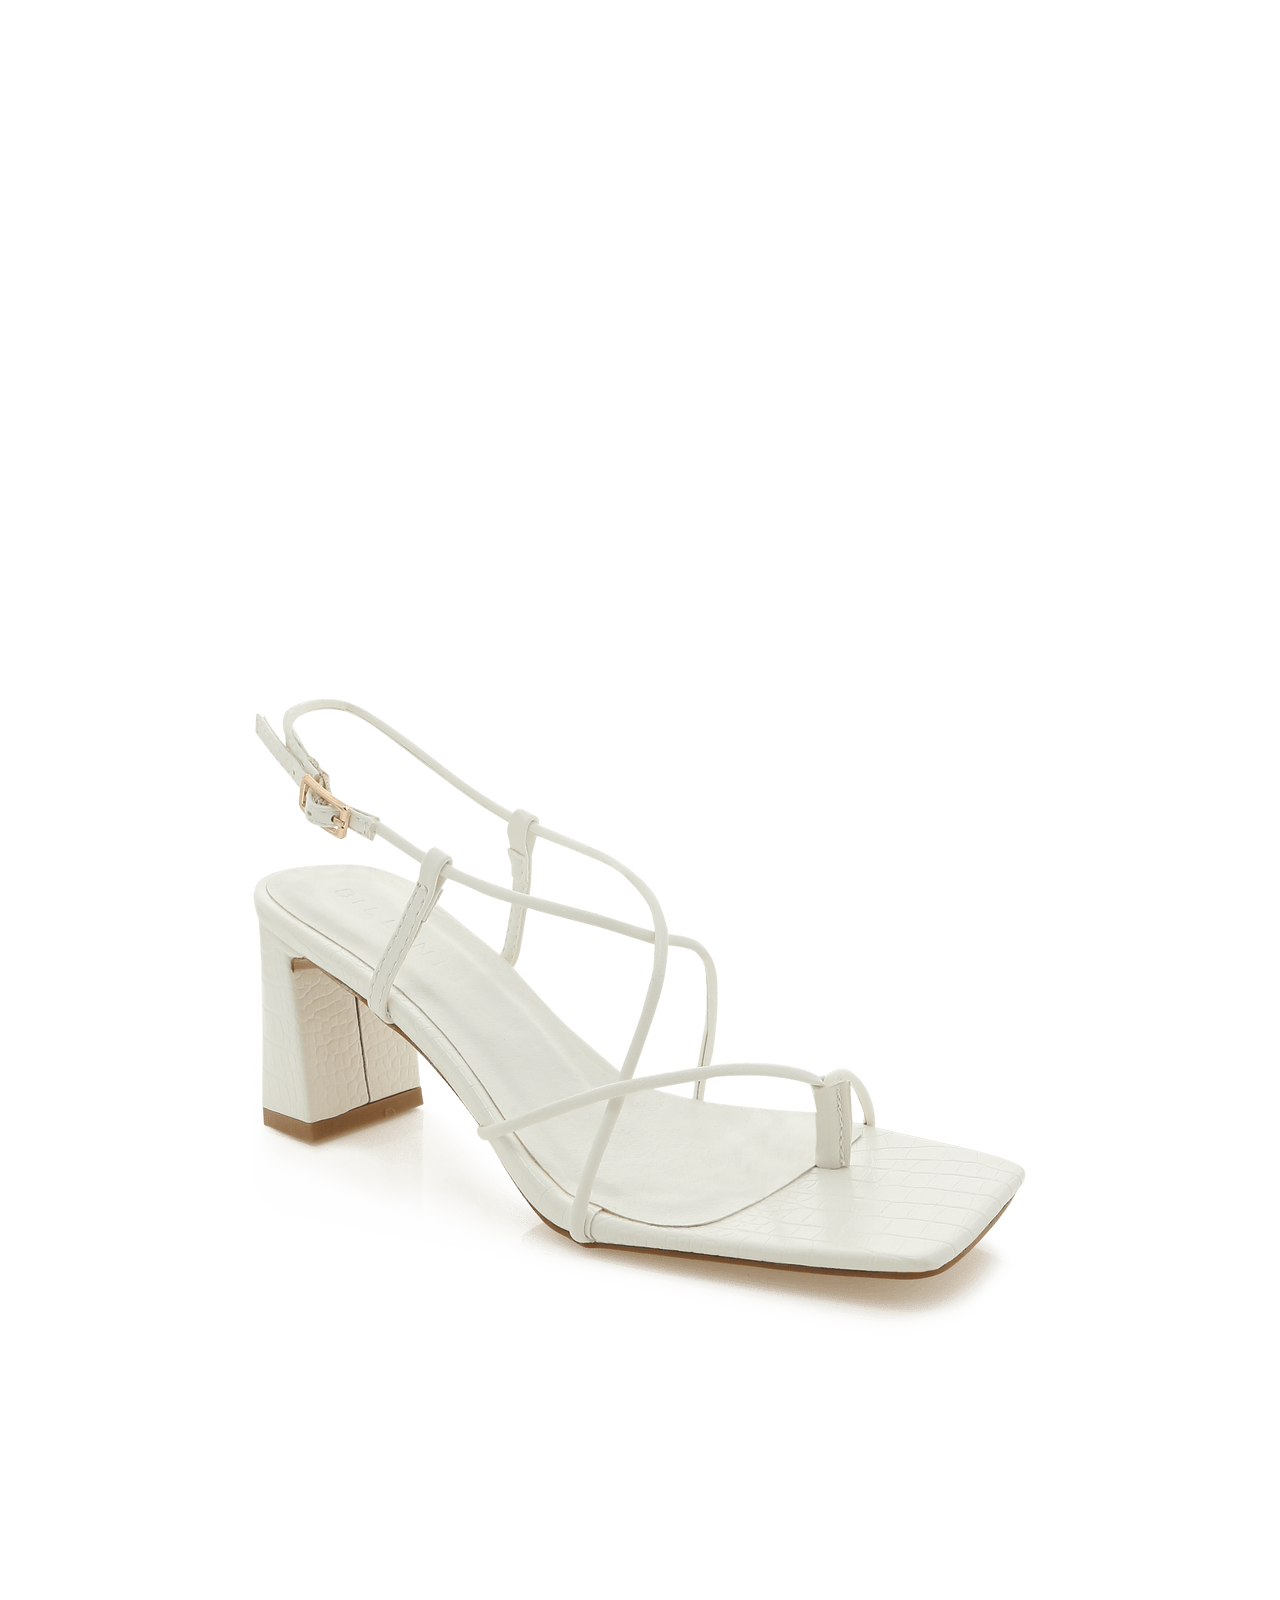 Ilaia Croc Strappy Sandal White, Shoes by Billini Shoes | LIT Boutique